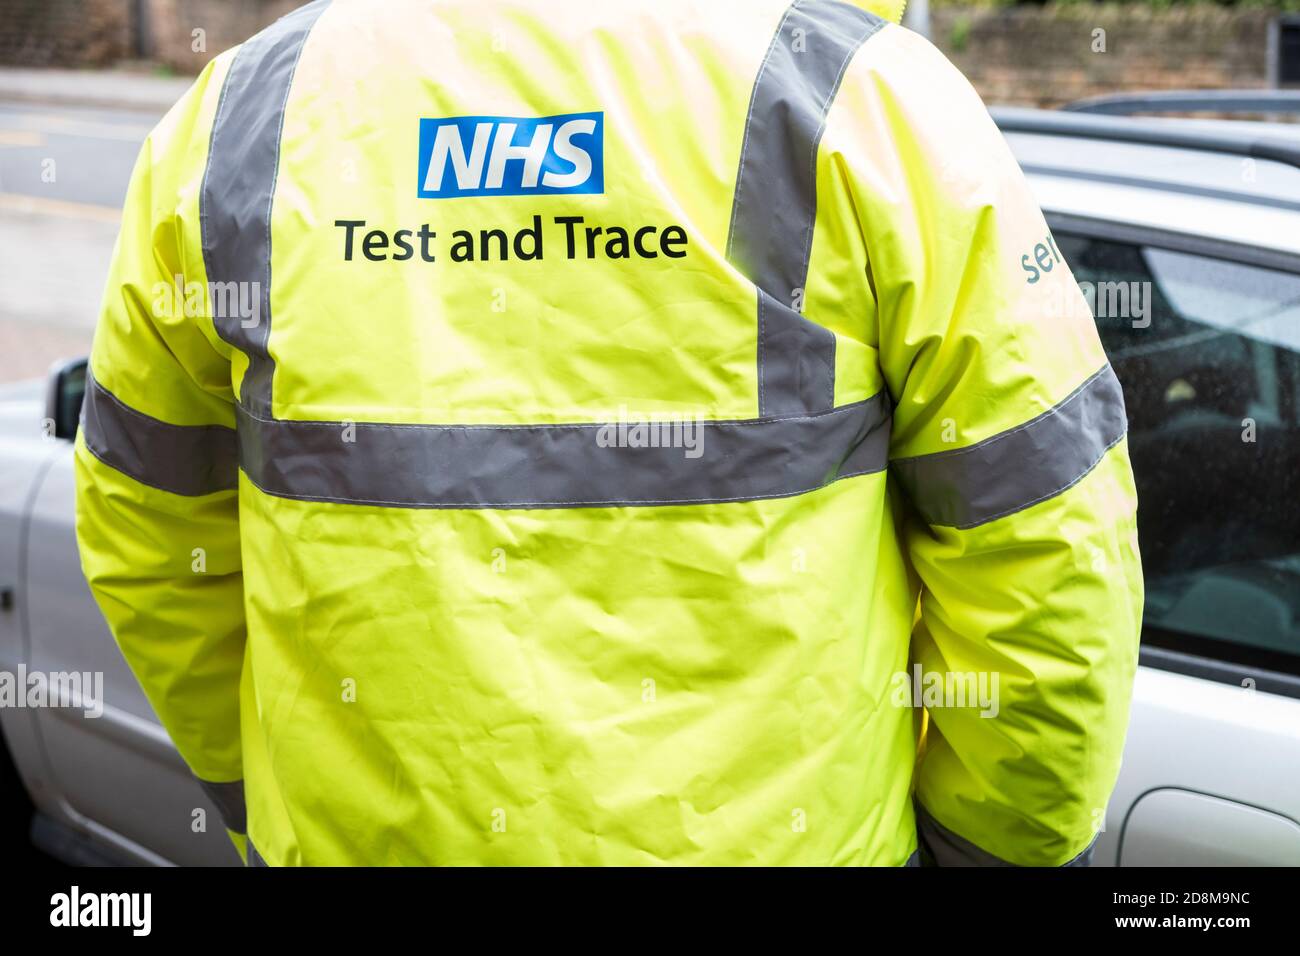 Persona con NHS Test y Trace hi Vis Jacket involucrada en pruebas y rastreo de coronavirus Covid-19, Inglaterra, Reino Unido Foto de stock